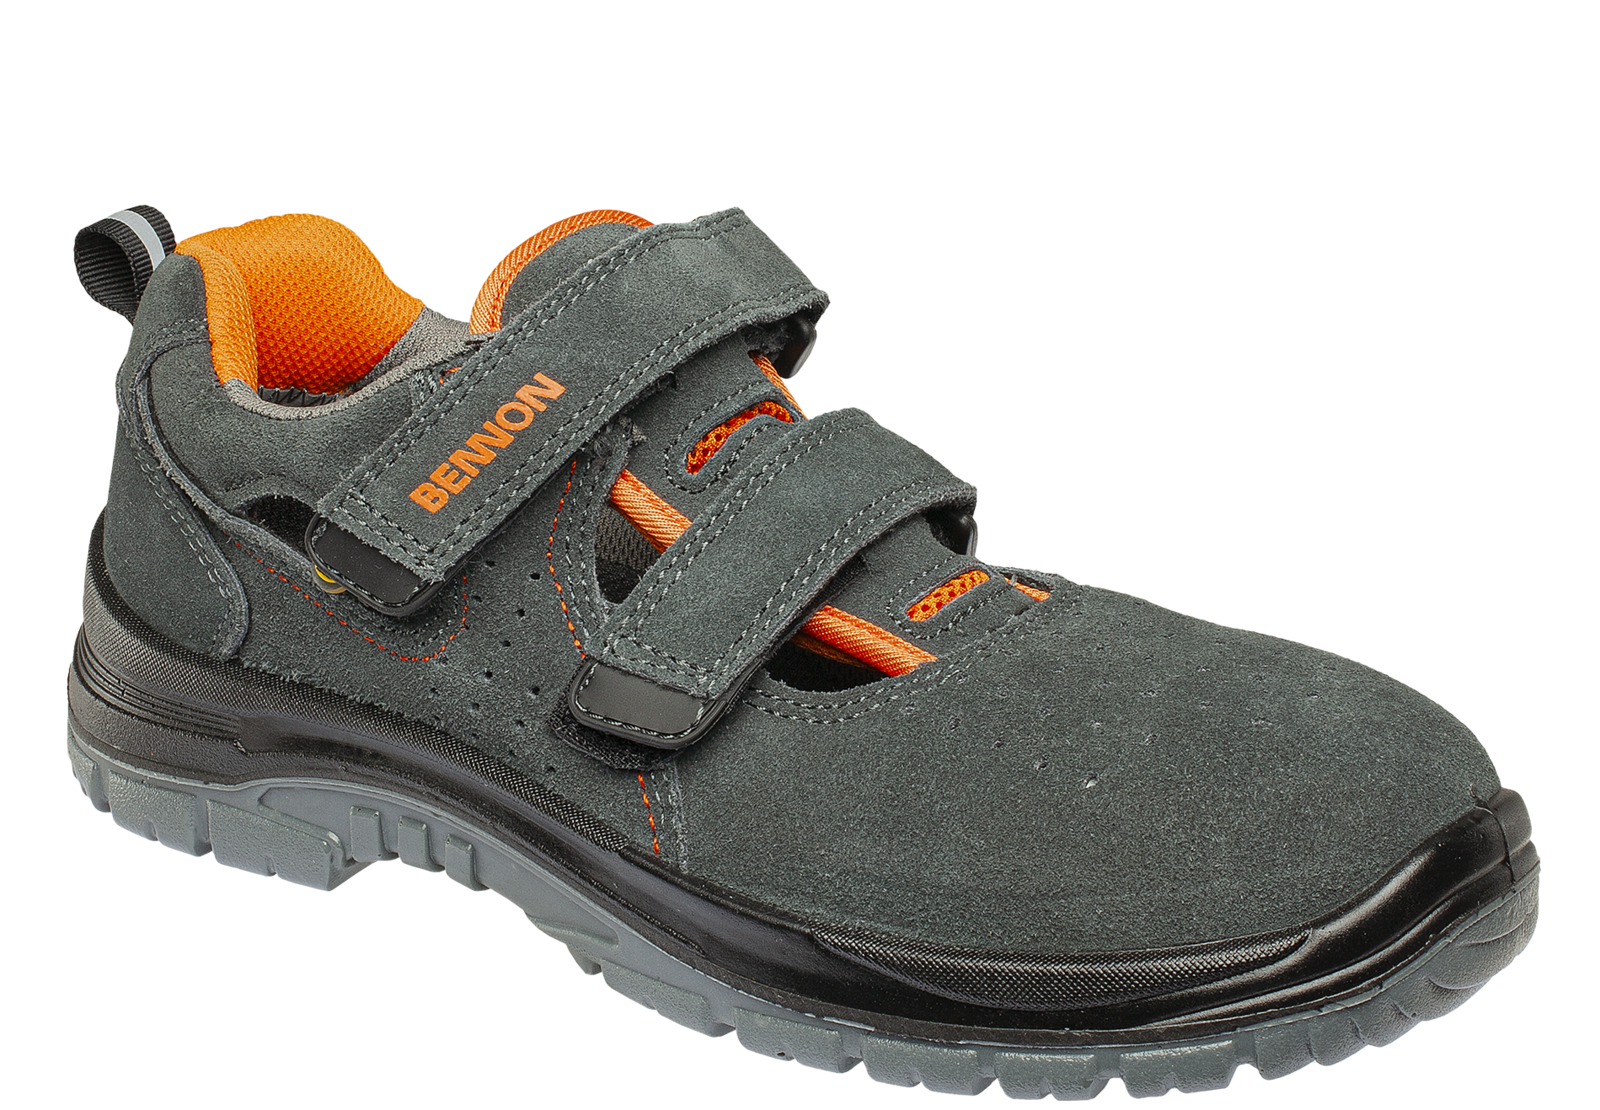 Bezpečnostné sandále Bennon Tobler S1 ESD - veľkosť: 39, farba: sivá/oranžová